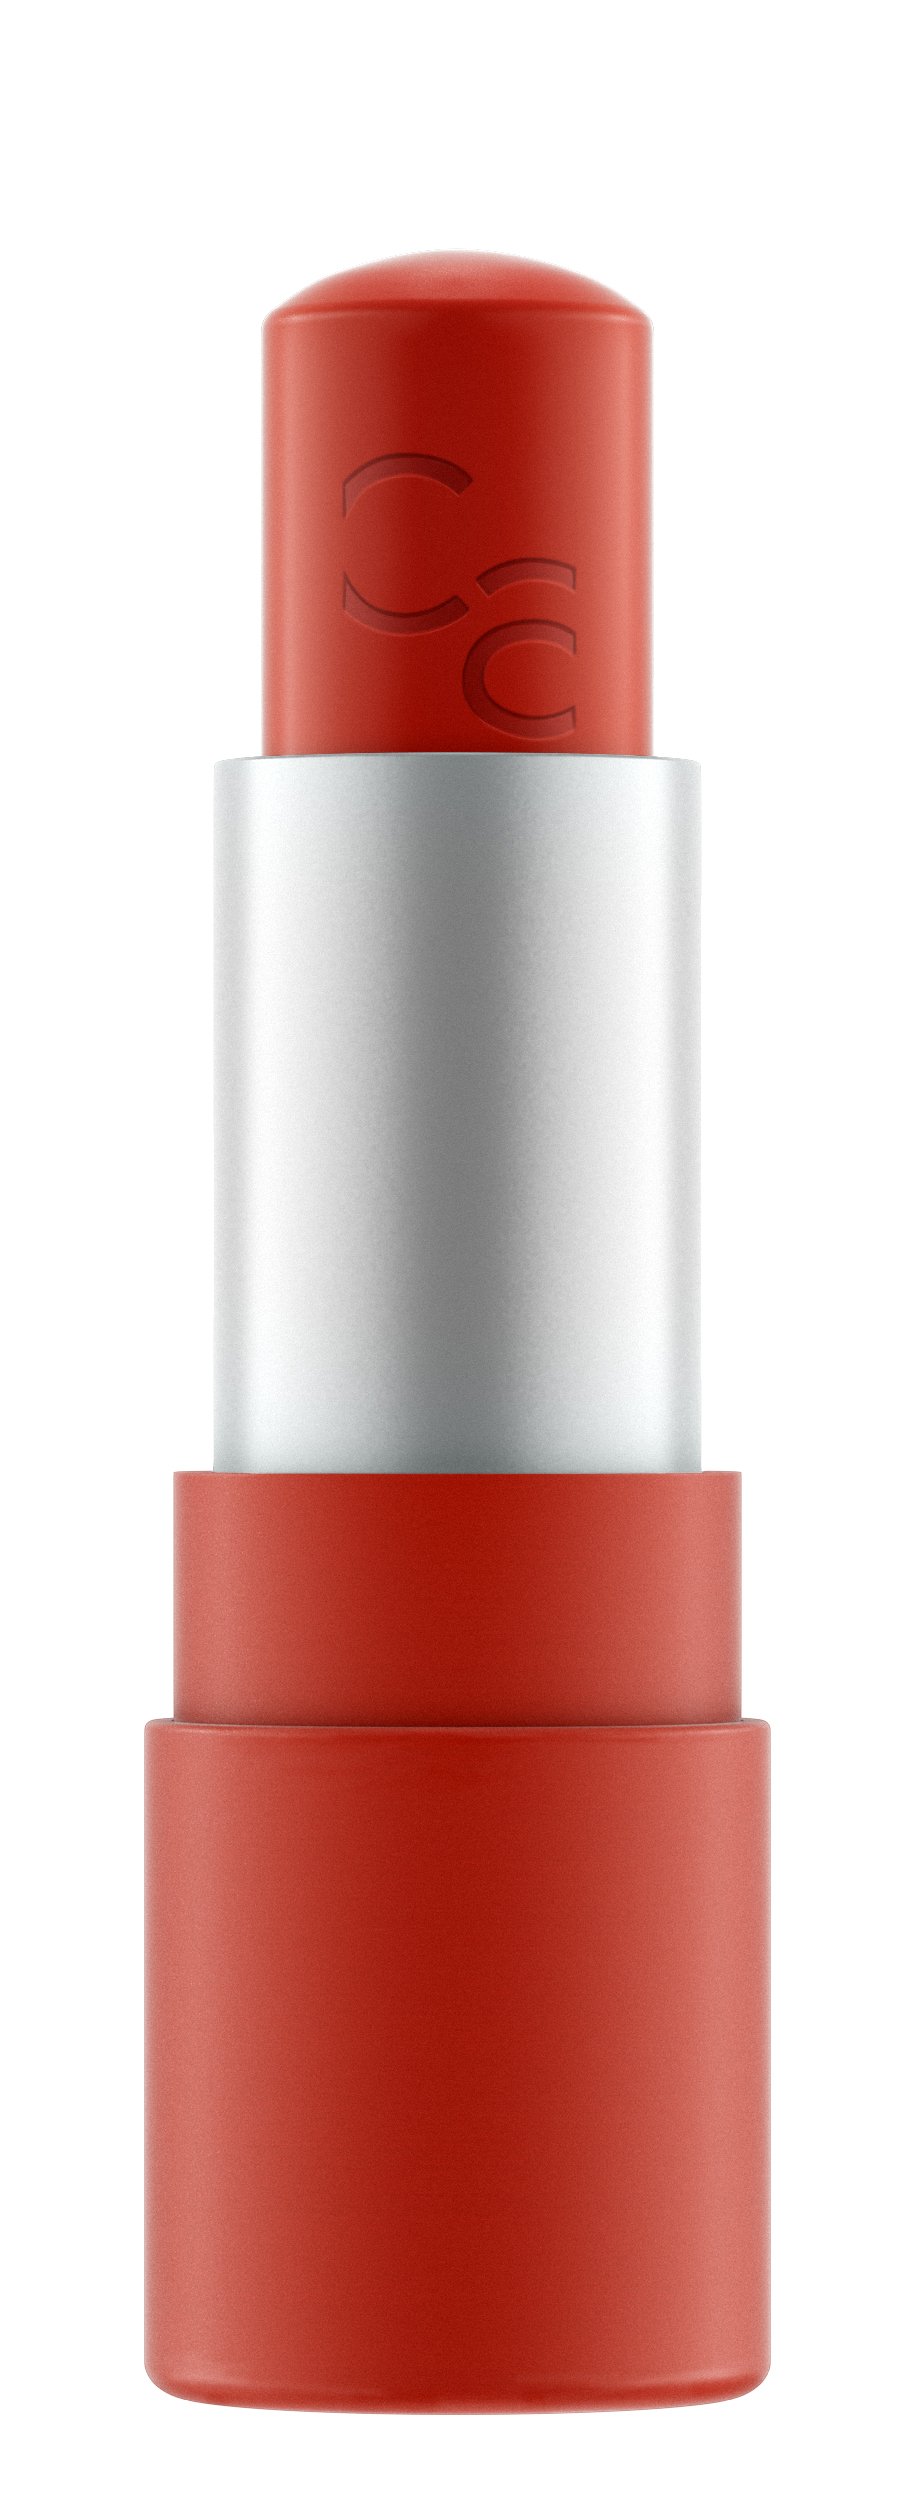 Catrice Sheer Beautifying Lip Balm 040 - คาทริซเชียร์บิวตี้ฟายอิ้งลิปบาล์ม 040